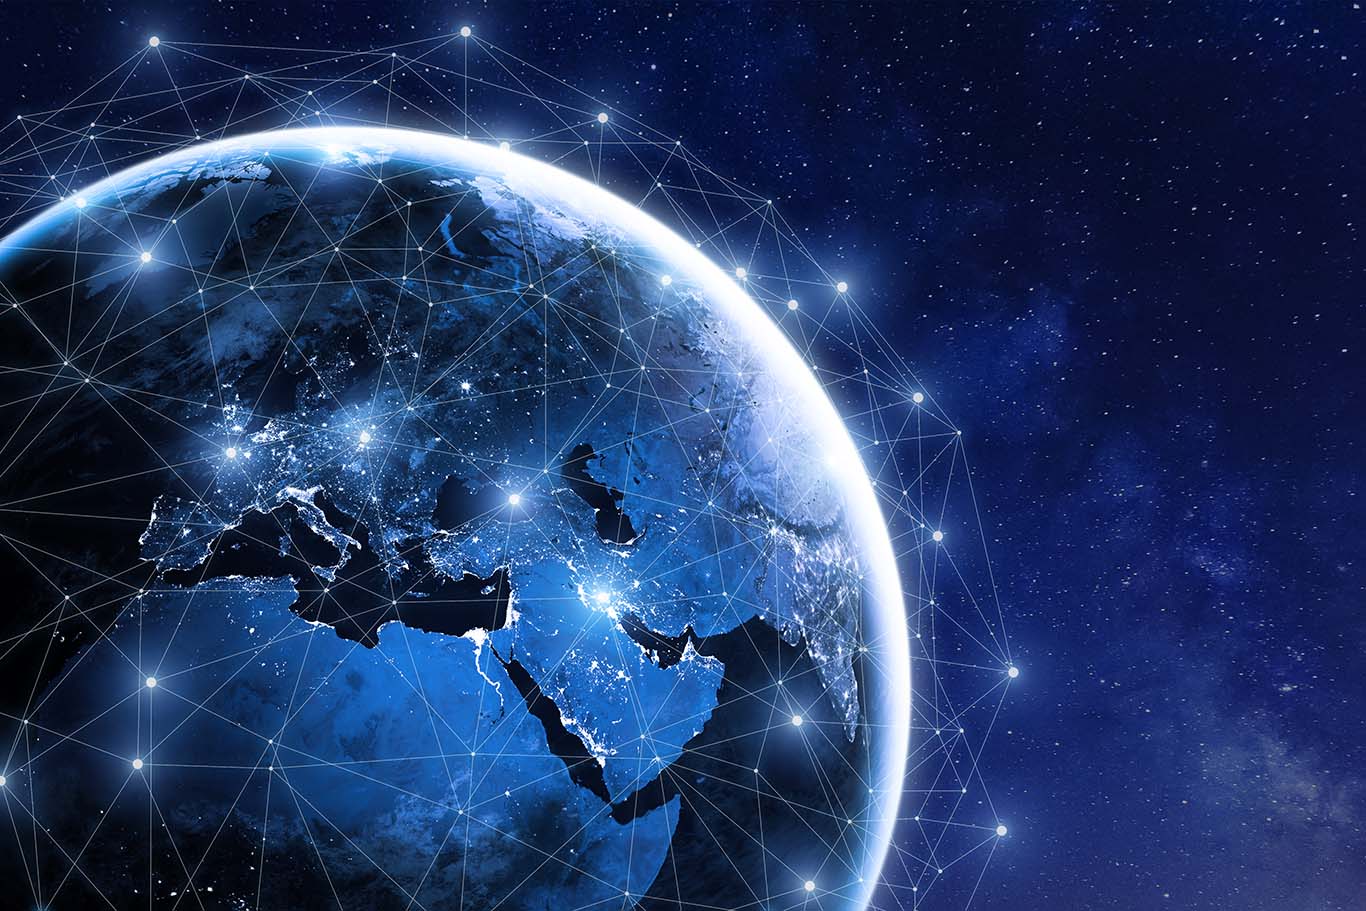 Hughes Network Systems un innovador en tecnologías y redes satelitales y de transporte múltiple durante 50 años, anunció que Telespazio